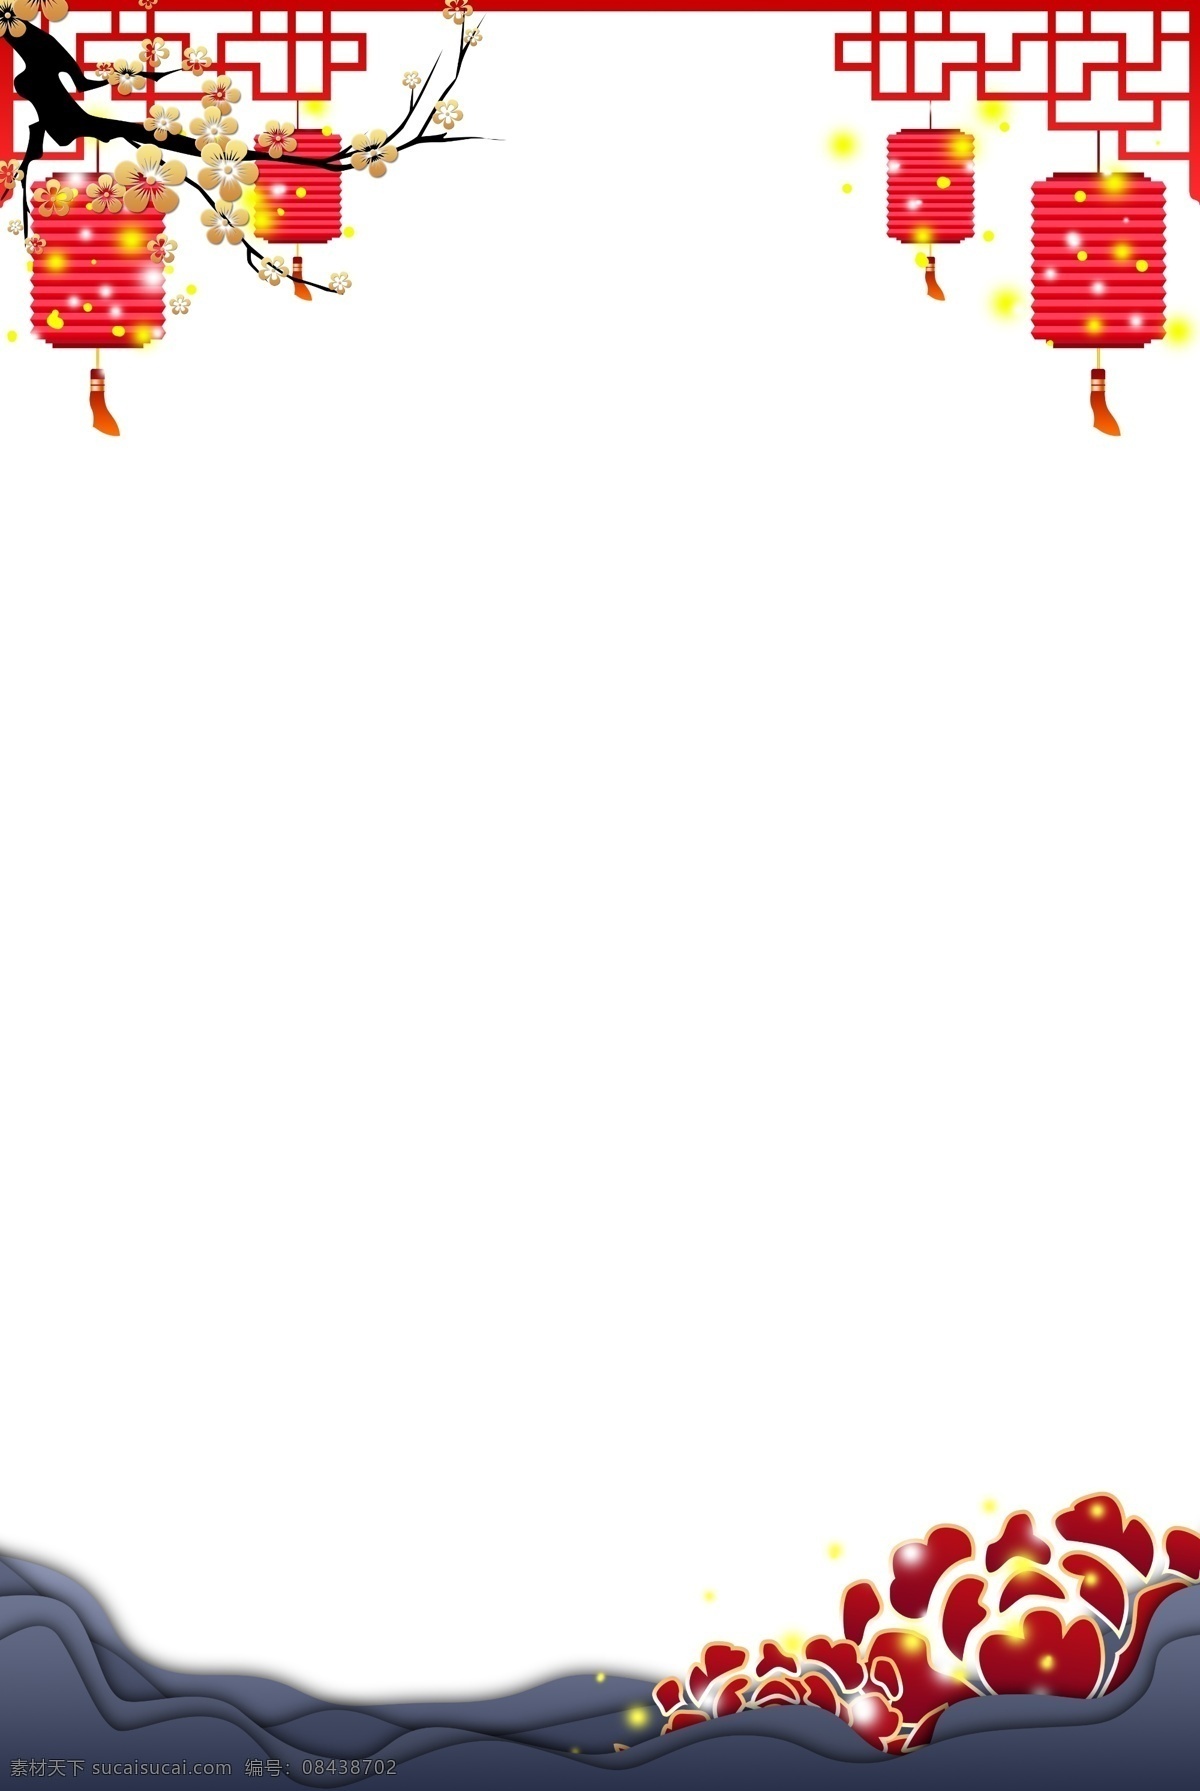 国风 喜庆 节日 海报 边框 纸灯笼 新年 团圆 红色 梅花 梅花枝 灯笼 红灯笼 挂落 中国风 元宵节 海报边框